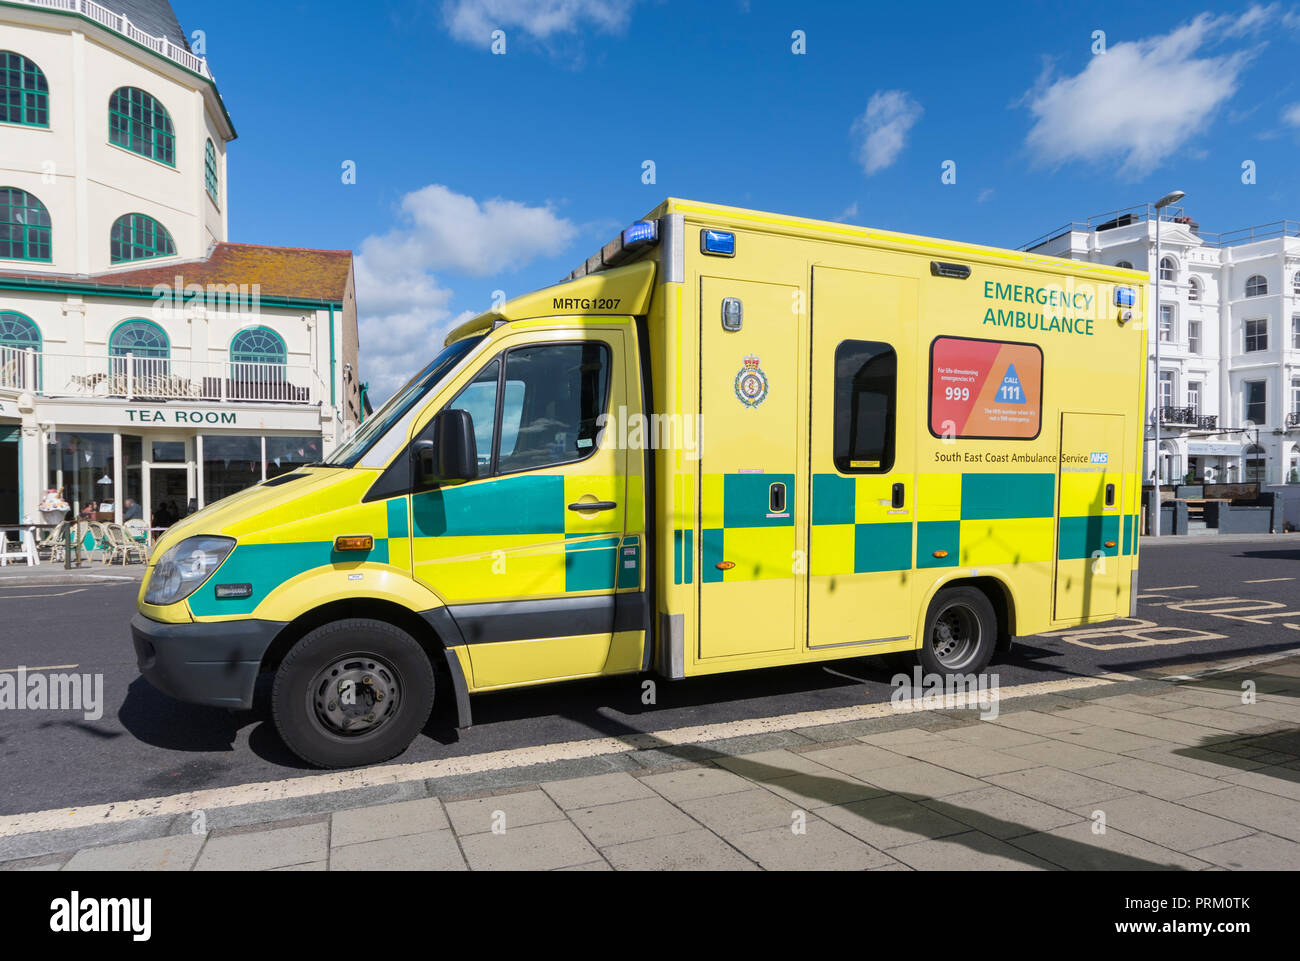 Côte sud-est de l'ambulance d'urgence stationné à Worthing, West Sussex, Angleterre, Royaume-Uni. Ambulance du NHS au Royaume-Uni. Banque D'Images